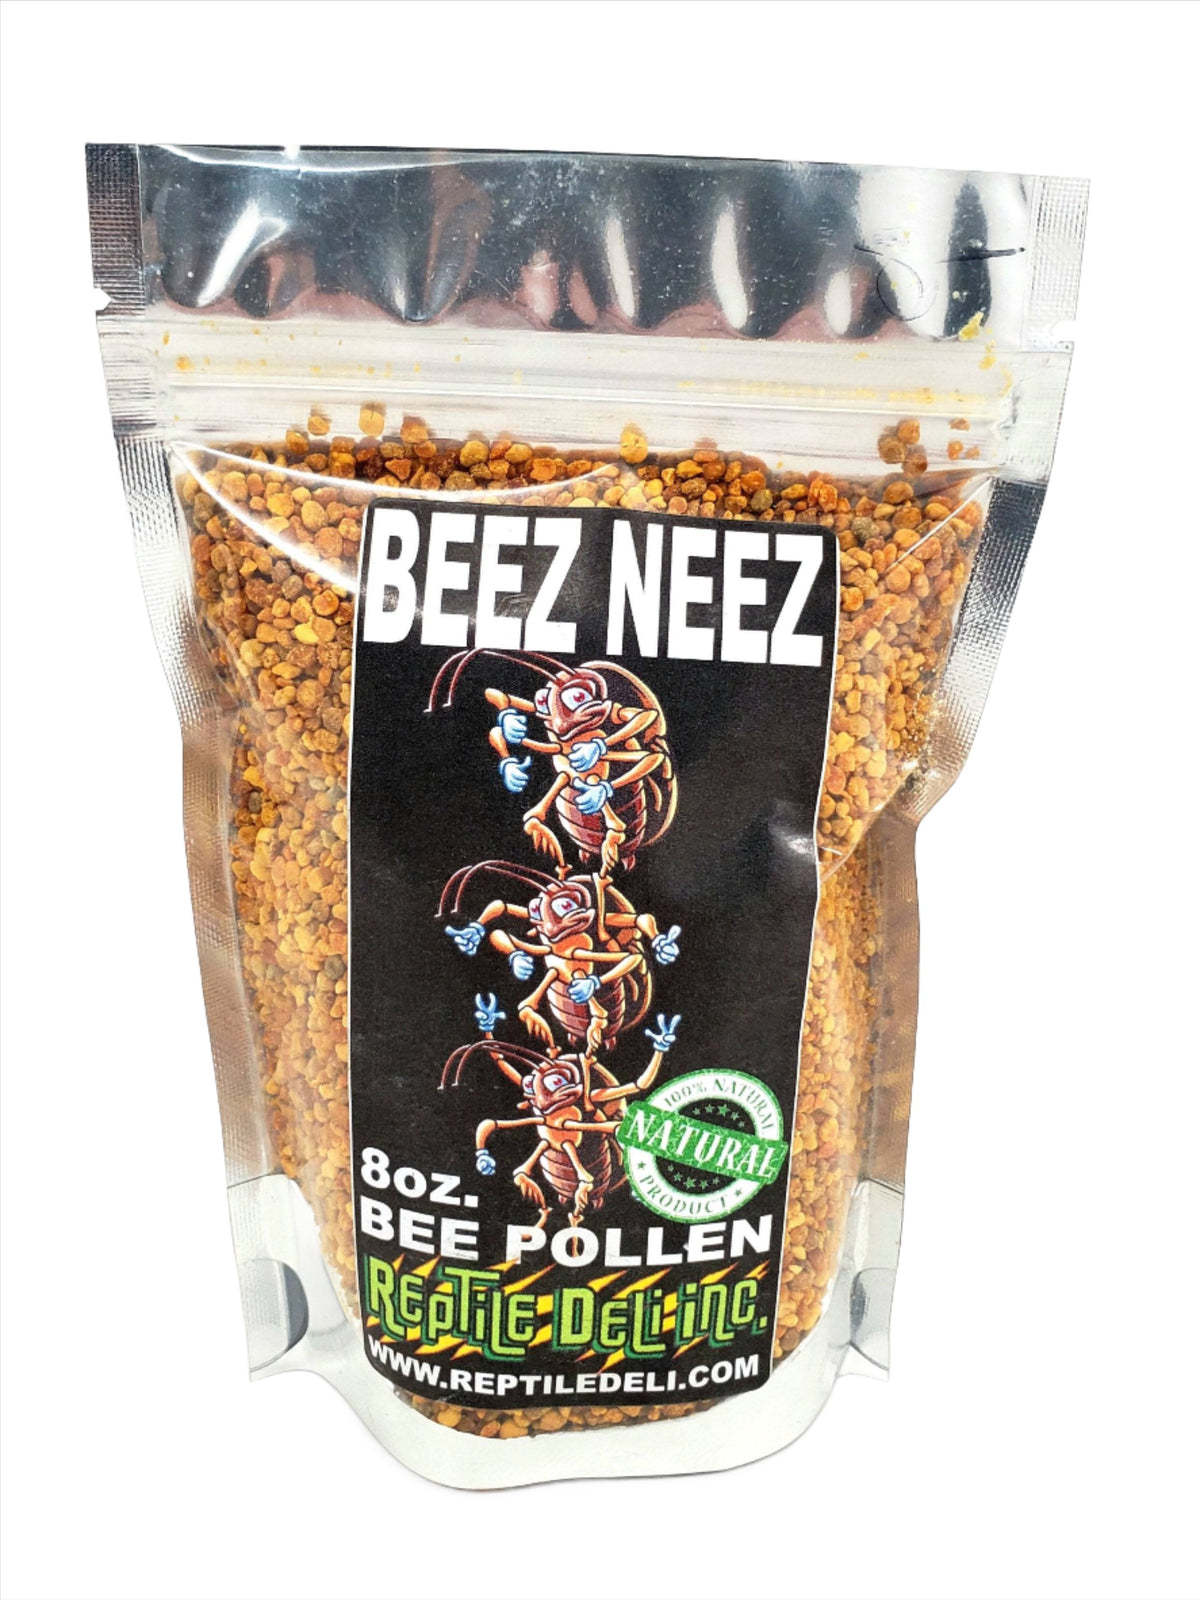 BEEZNEEZ - Bee Pollen - ADD-ON ITEM - Reptile Deli Inc.